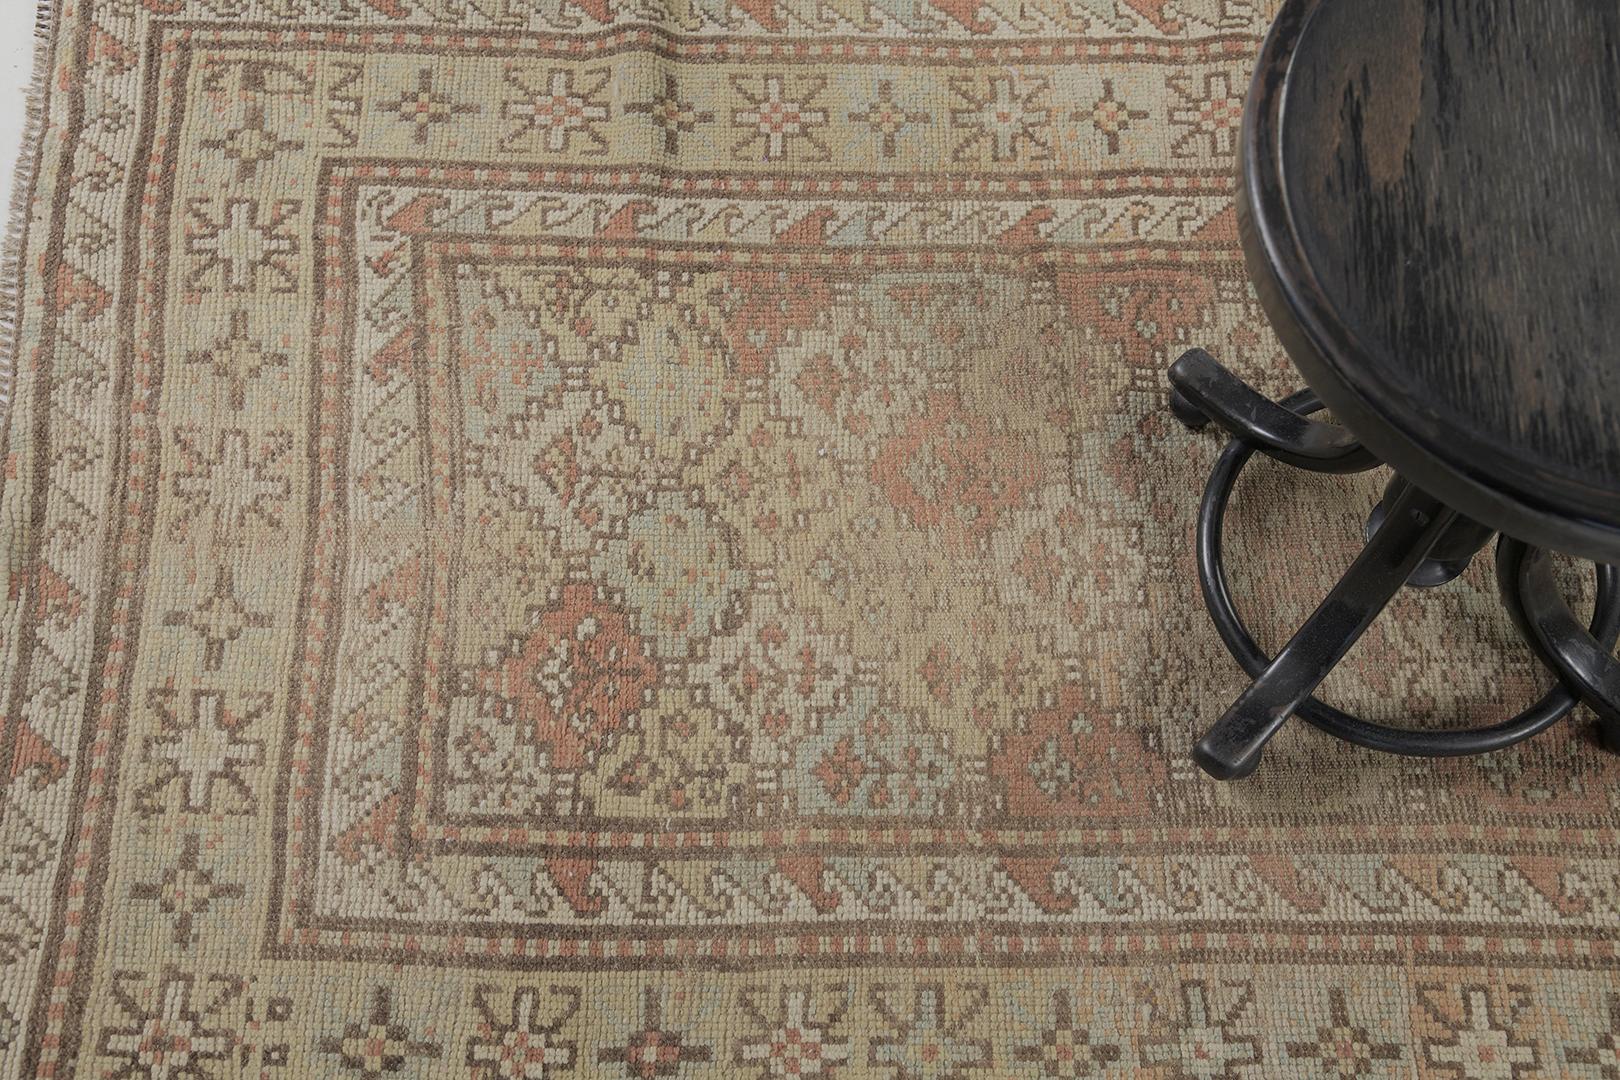 Notre tapis traditionnel caucasien Kazak s'inspire de motifs tribaux. Les combinaisons de couleurs neutres sont bien complétées par la conception du panneau sur toute la surface. Ce tapis est une aubaine pour les sols ou les murs. Il est orné de